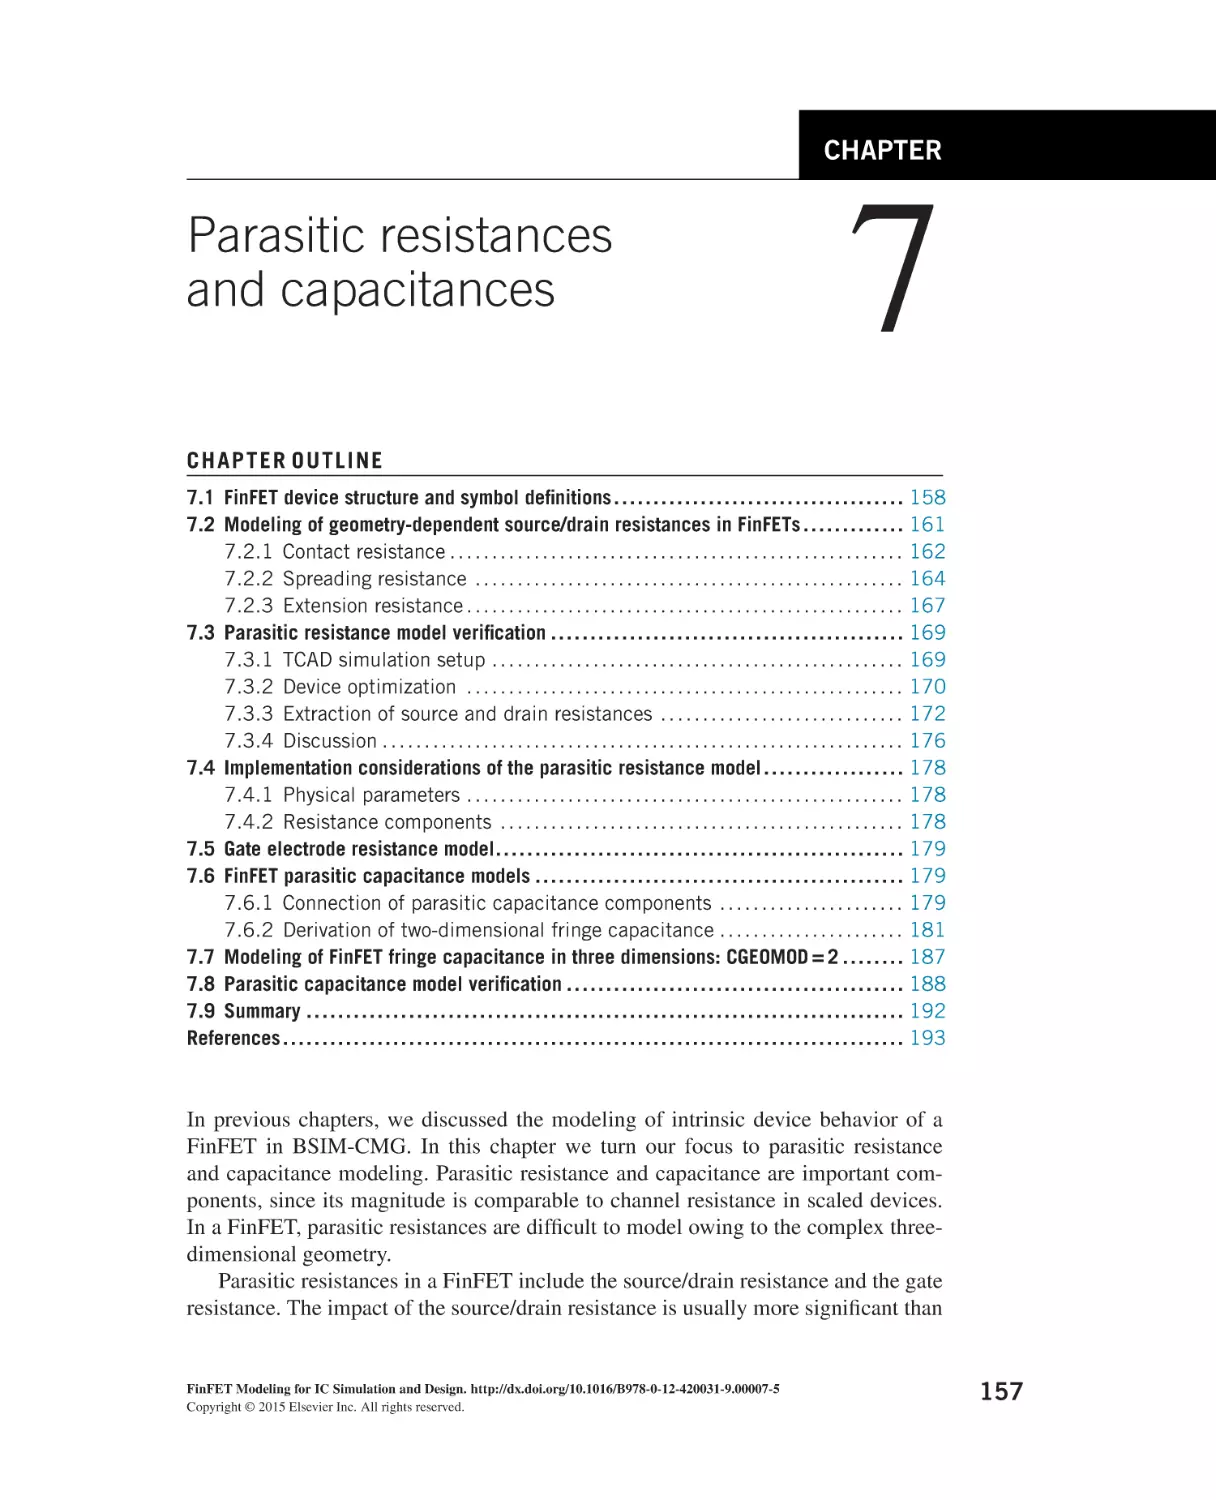 Parasitic resistances and capacitances